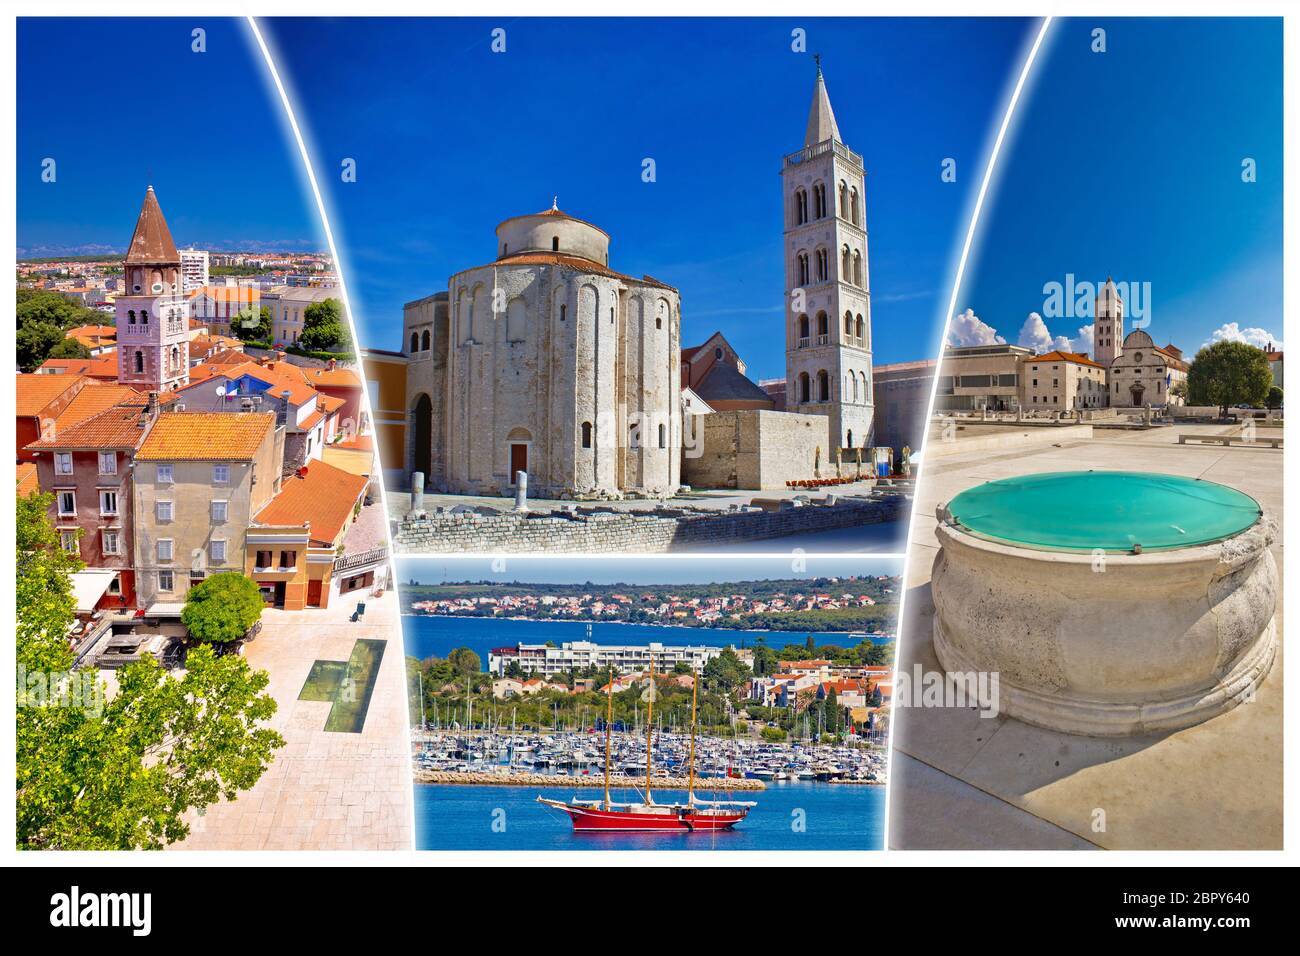 Ville de Zadar, carte postale touristique des sites célèbres et la belle nature de la Dalmatie, Croatie Banque D'Images